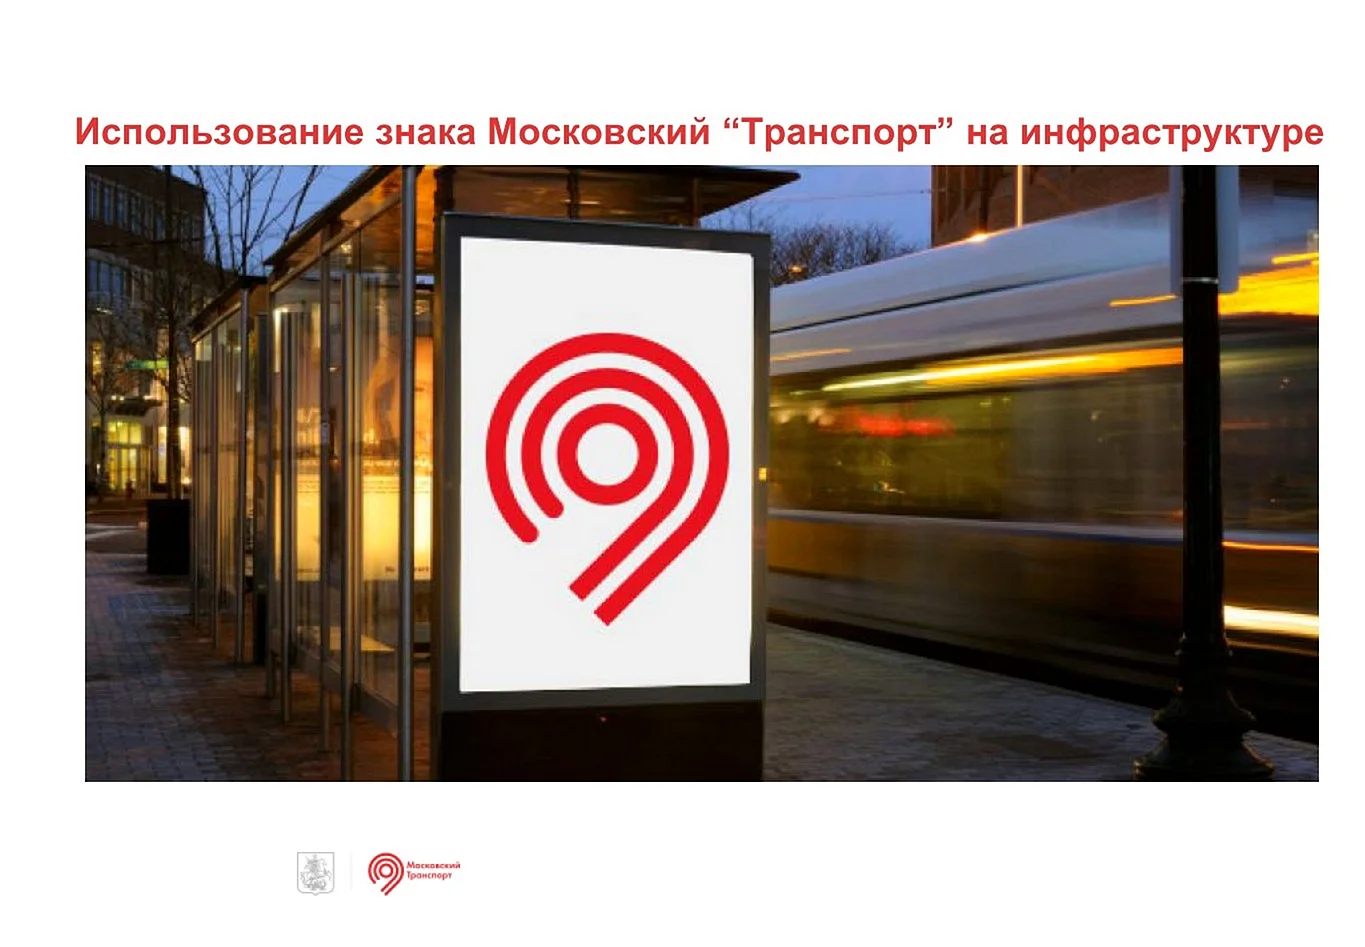 Логотип Московский метрополитен транспорт